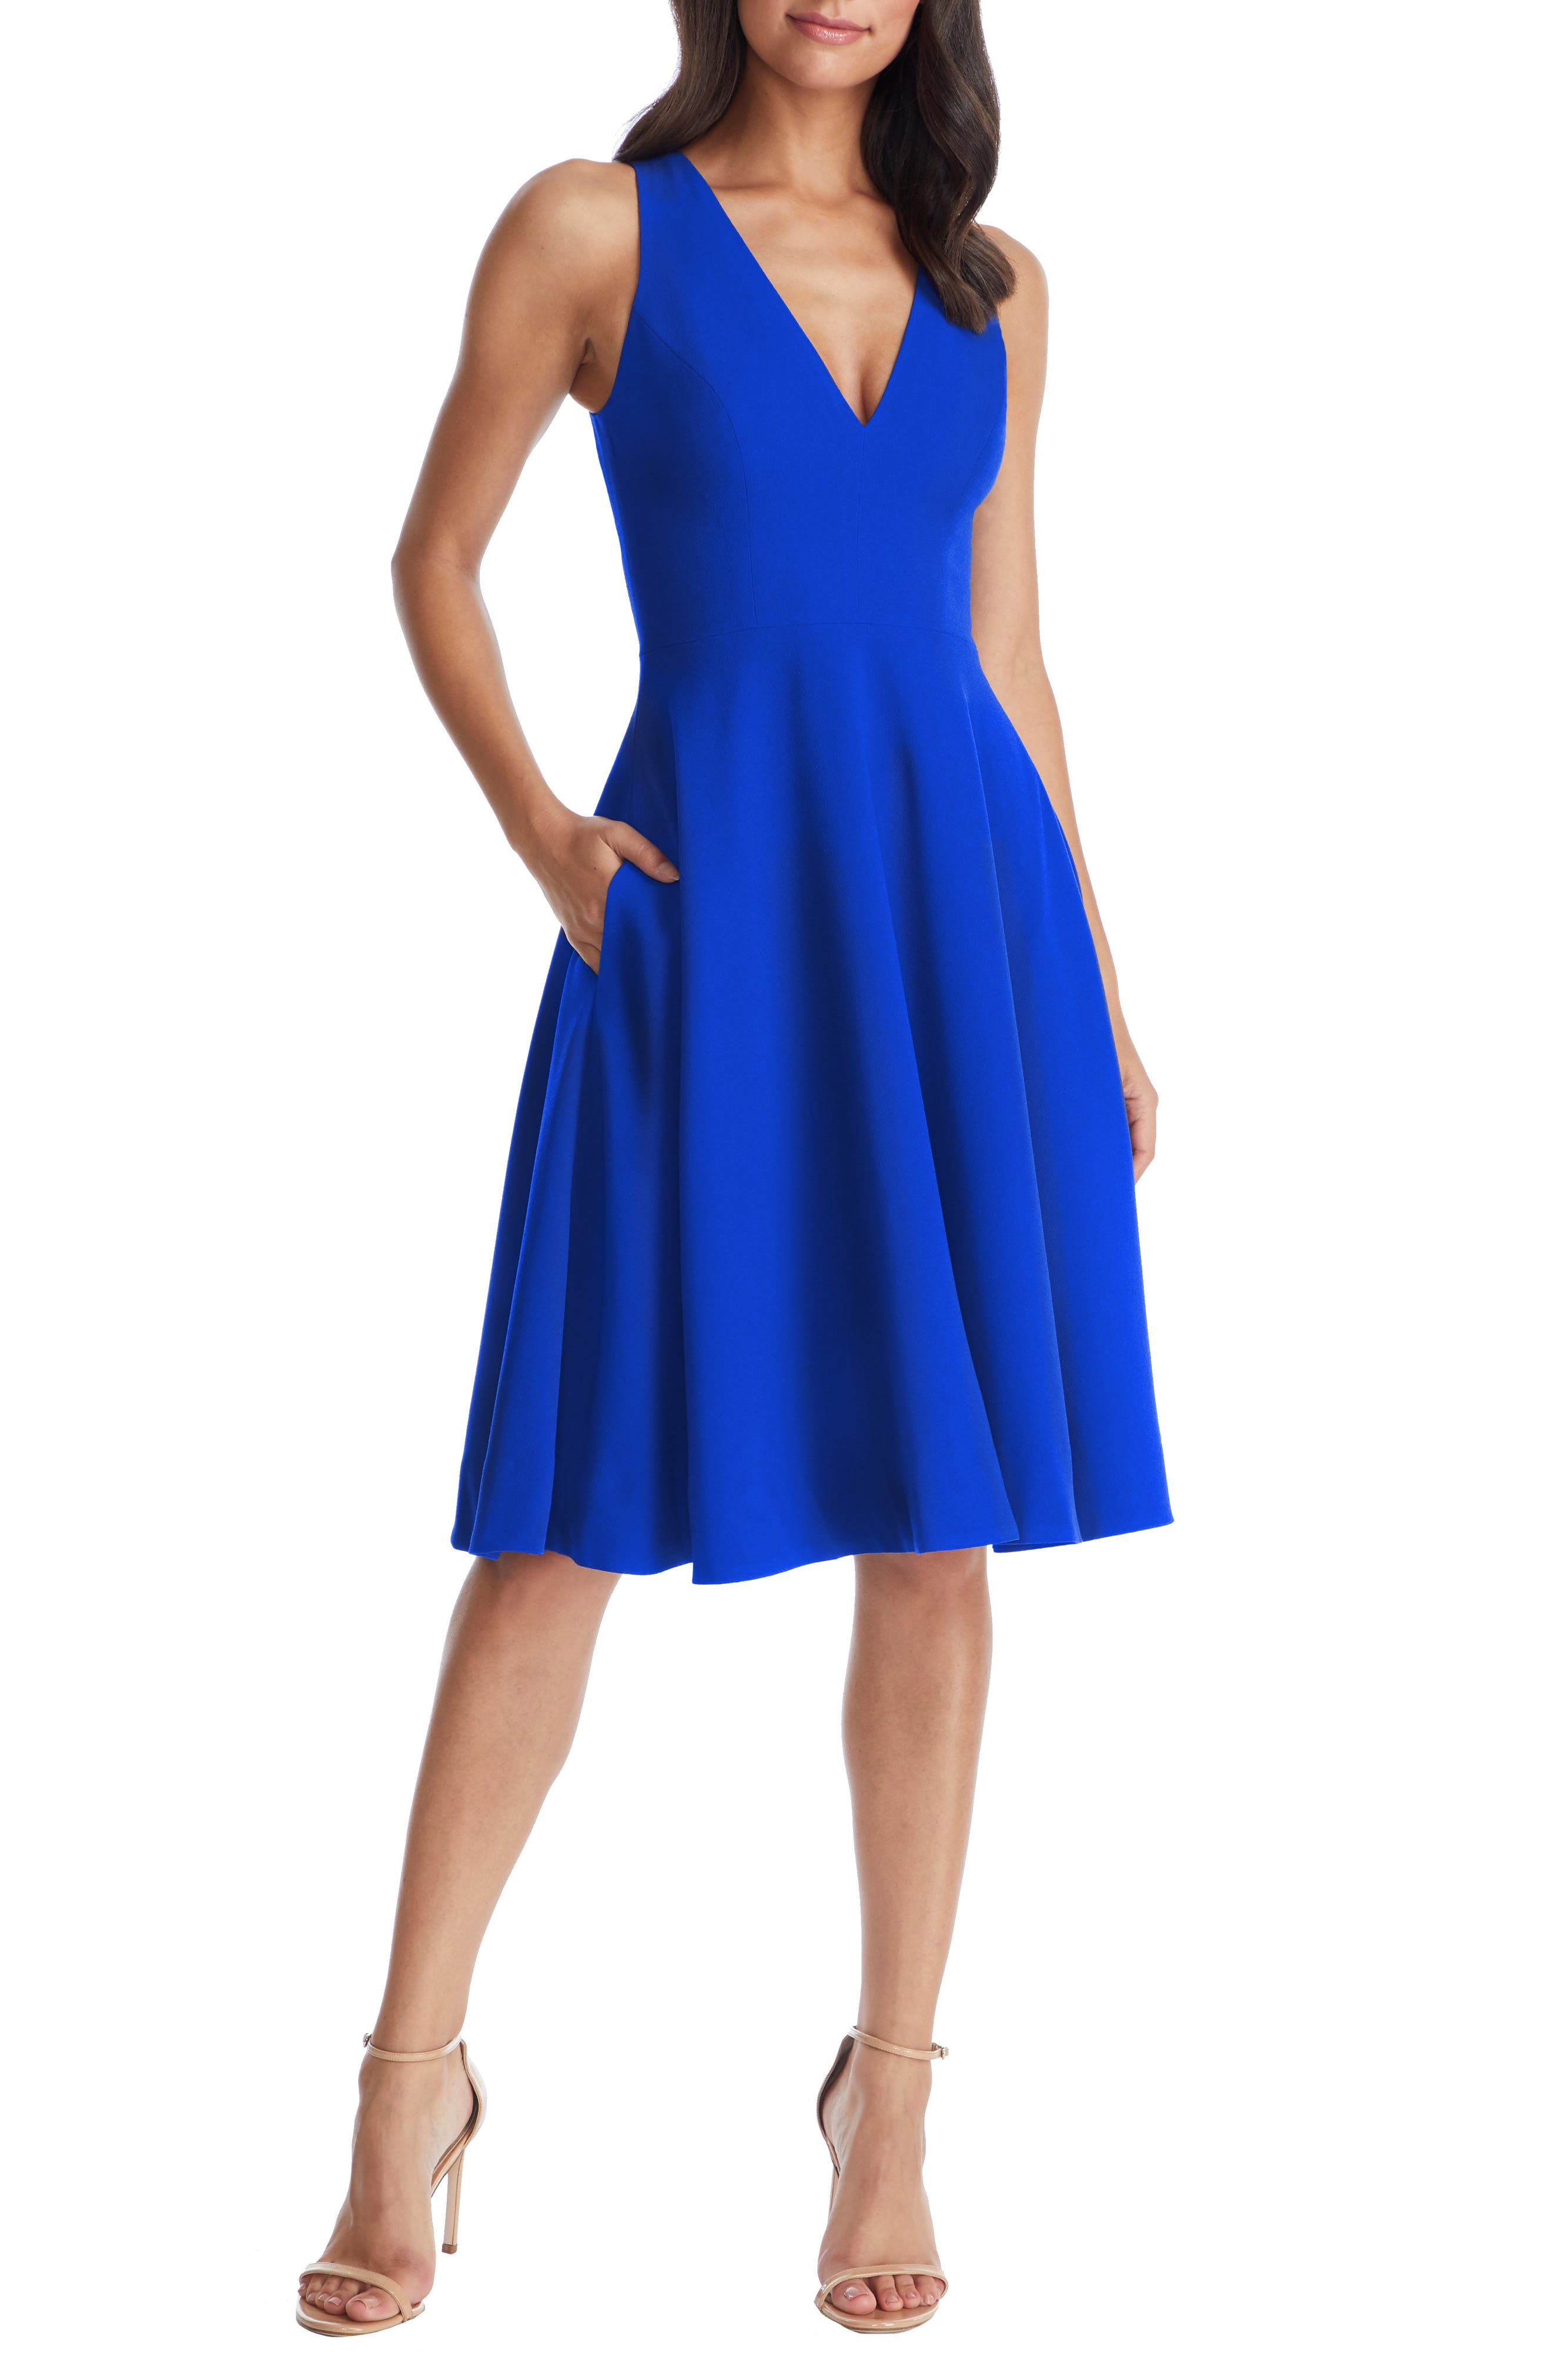 Blue Cocktail Dresses ☀ Party Dresses ...